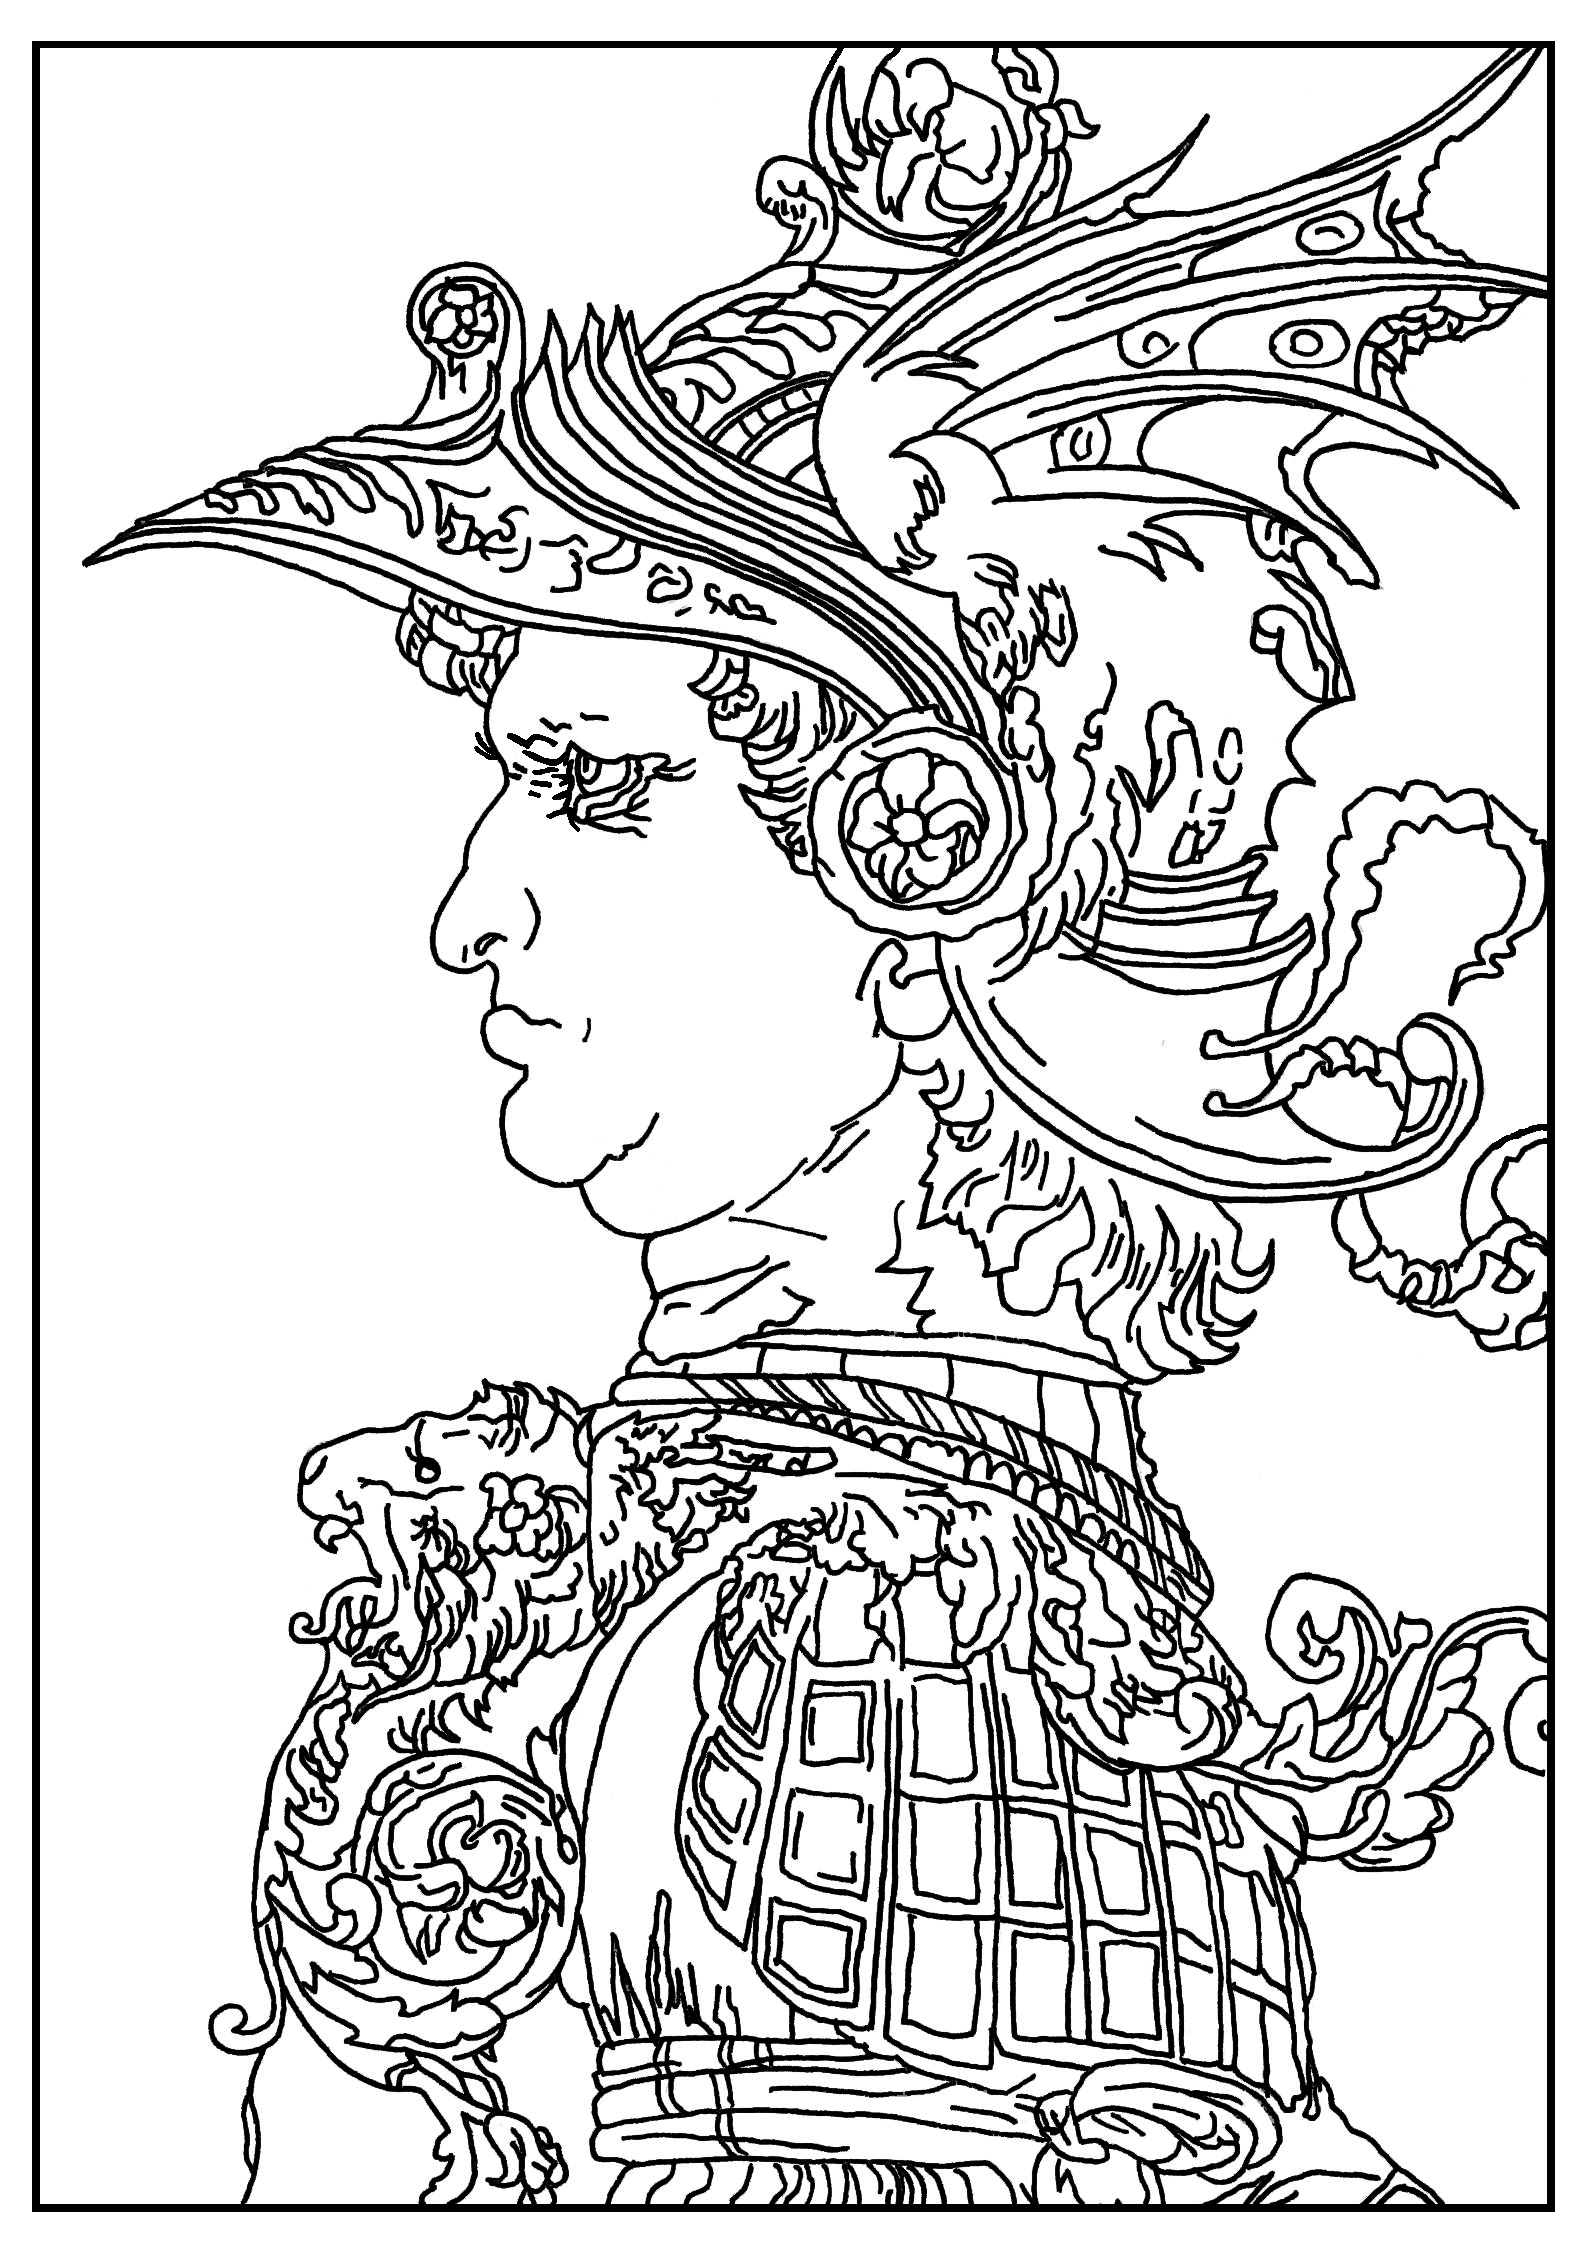 Página para colorear creada a partir de un dibujo de Leonardo Da Vinci : Perfil de un guerrero con casco (1477), Artista : Sofian